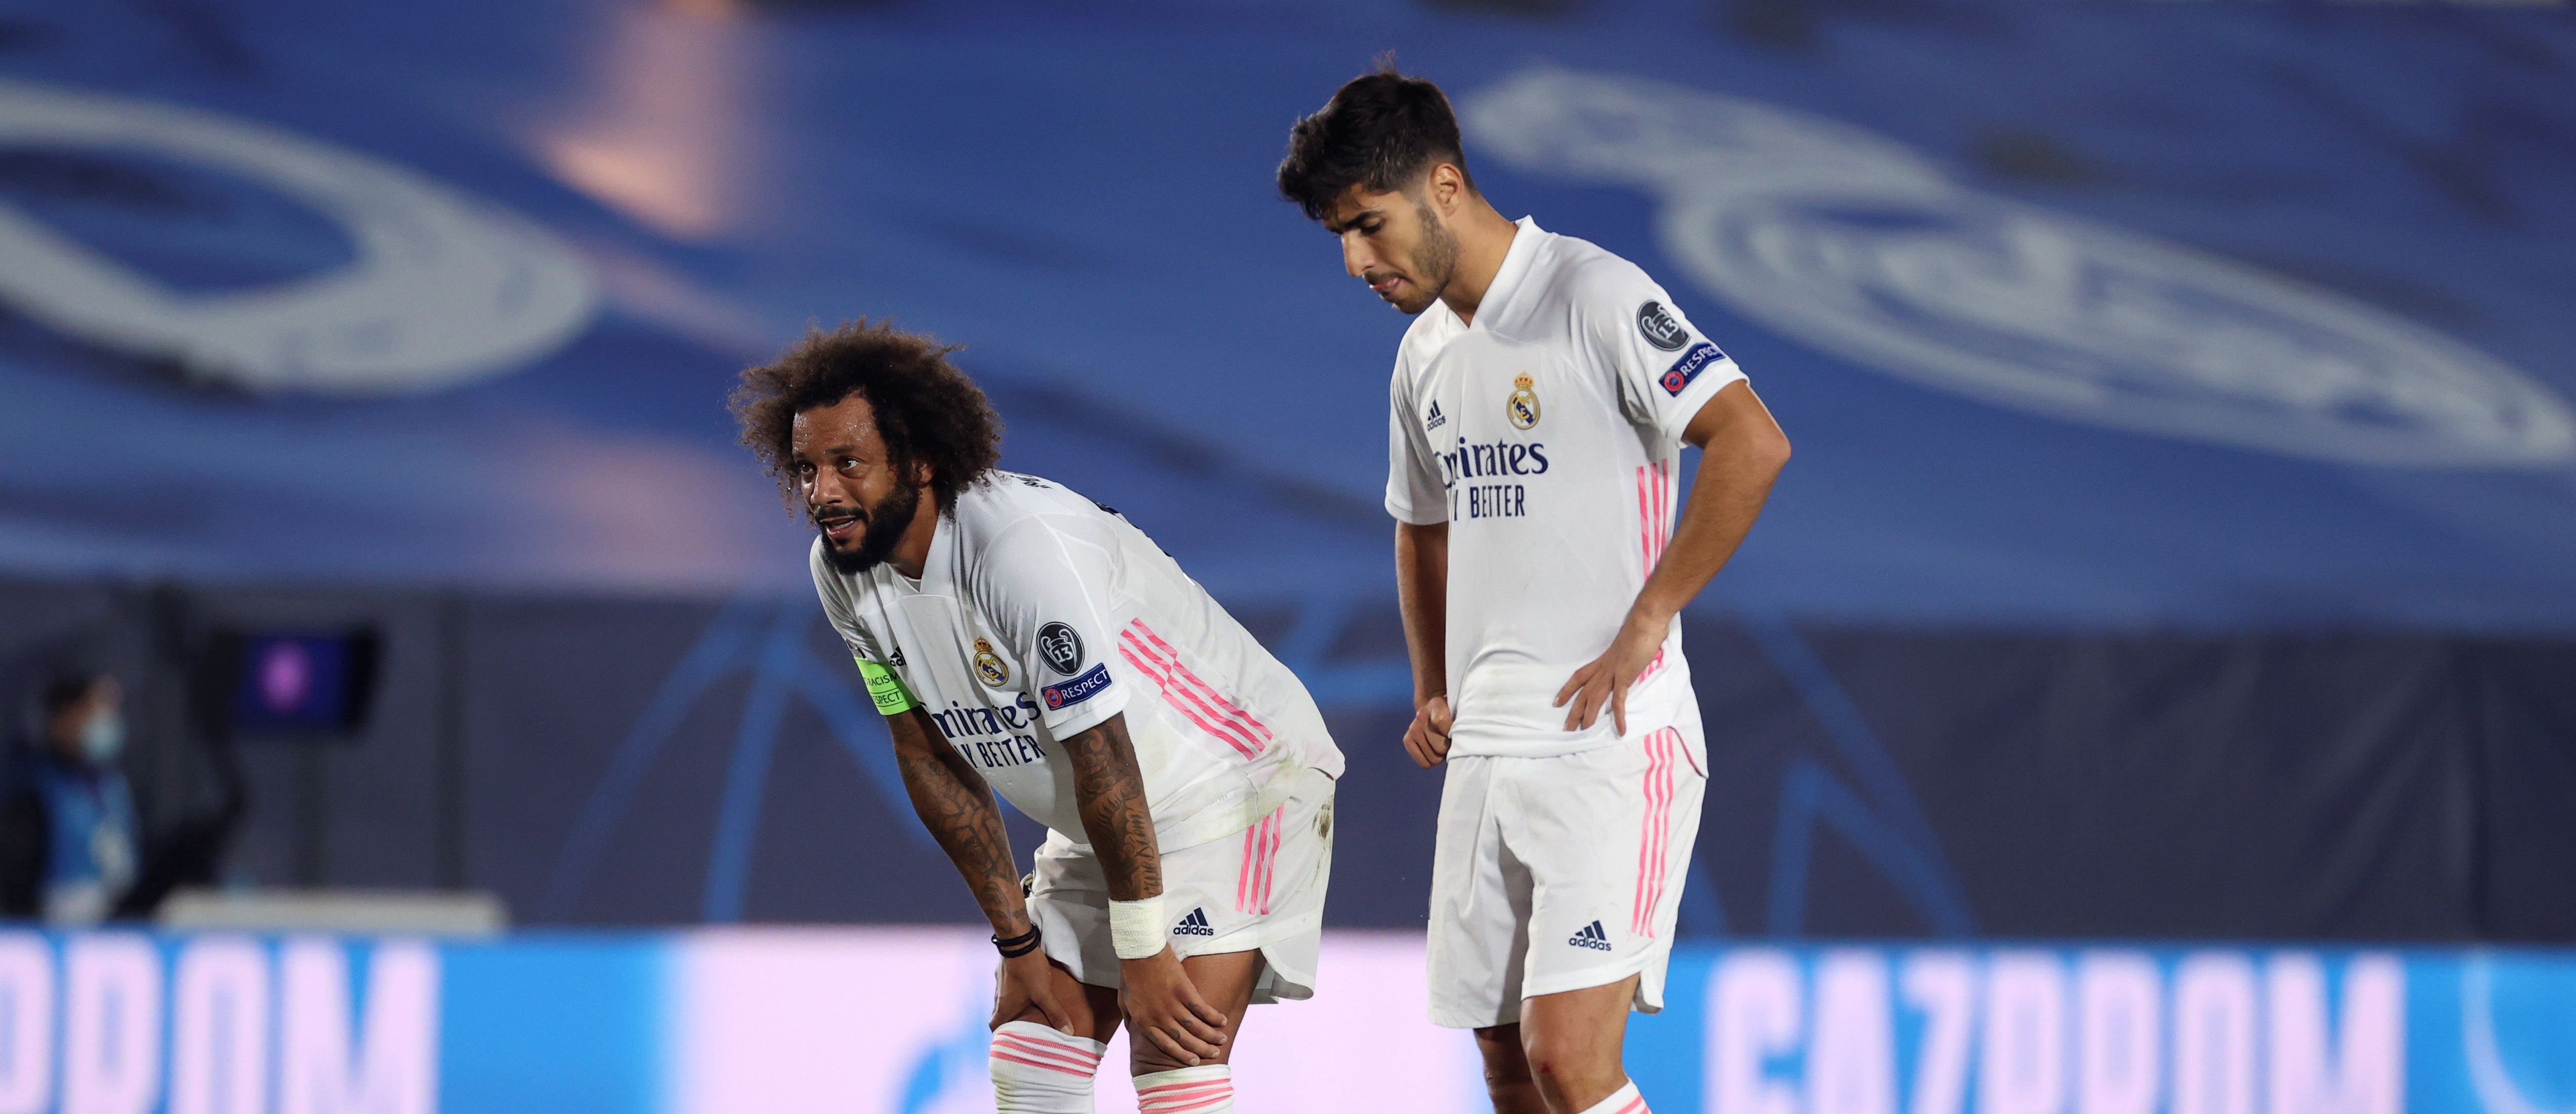 Los jugadores del Real Madrid, Marcelo Vieira (i) y Marco Asensio durante el partido ante el Shakhtar. (Foto Prensa Libre: EFE)